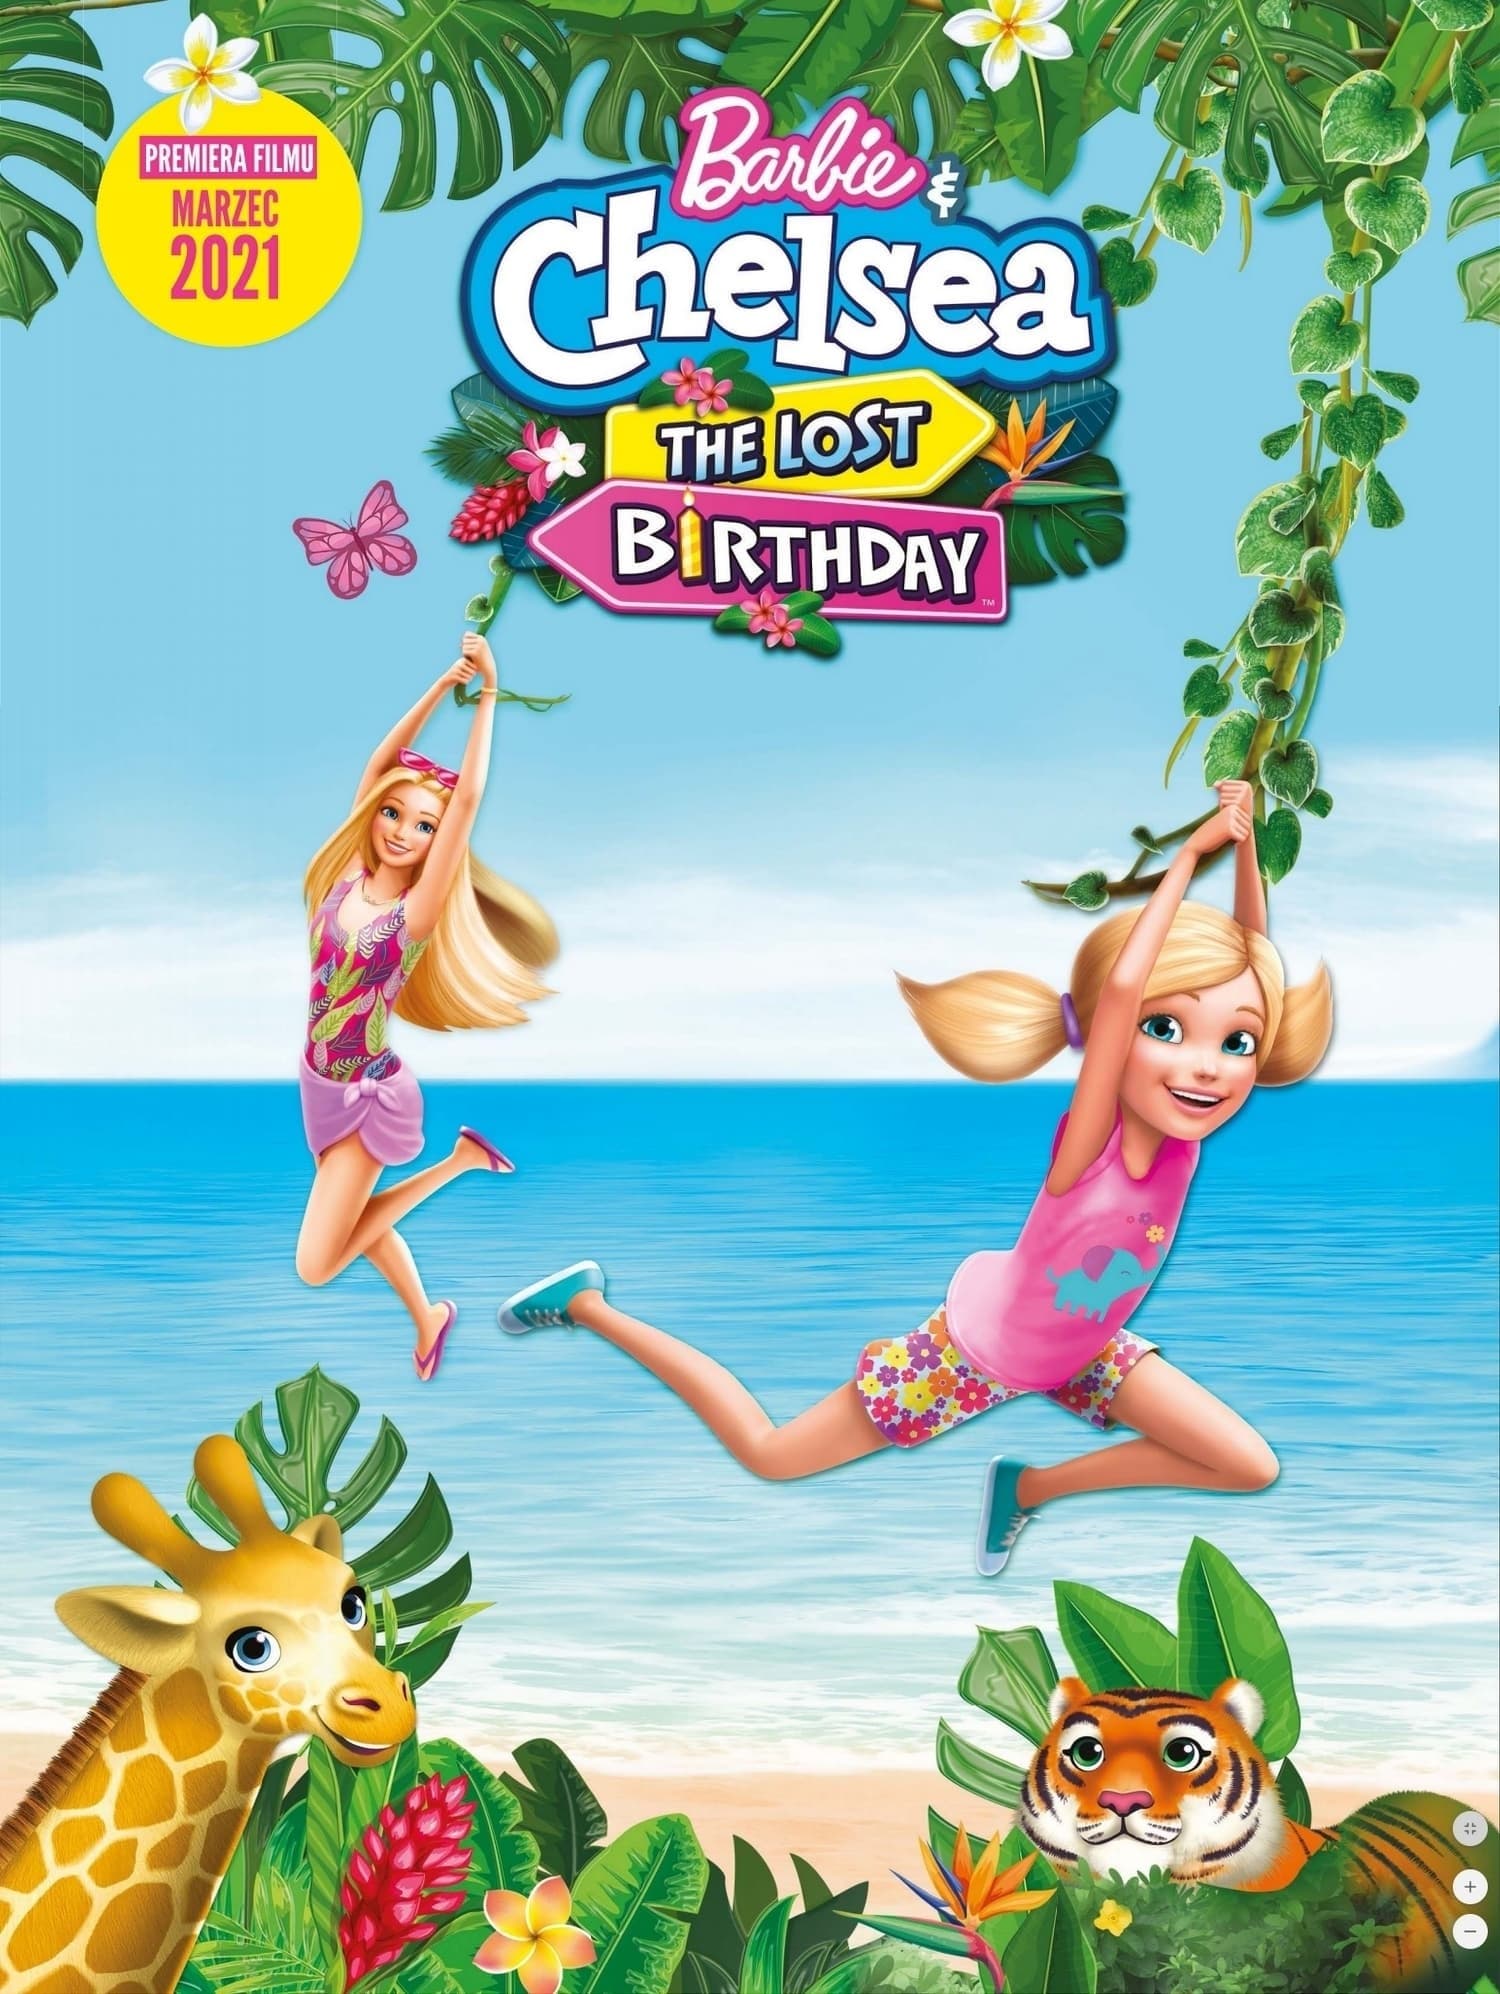 Caratula de Barbie & Chelsea: The Lost Birthday (Barbie y Chelsea: El cumpleaños perdido) 